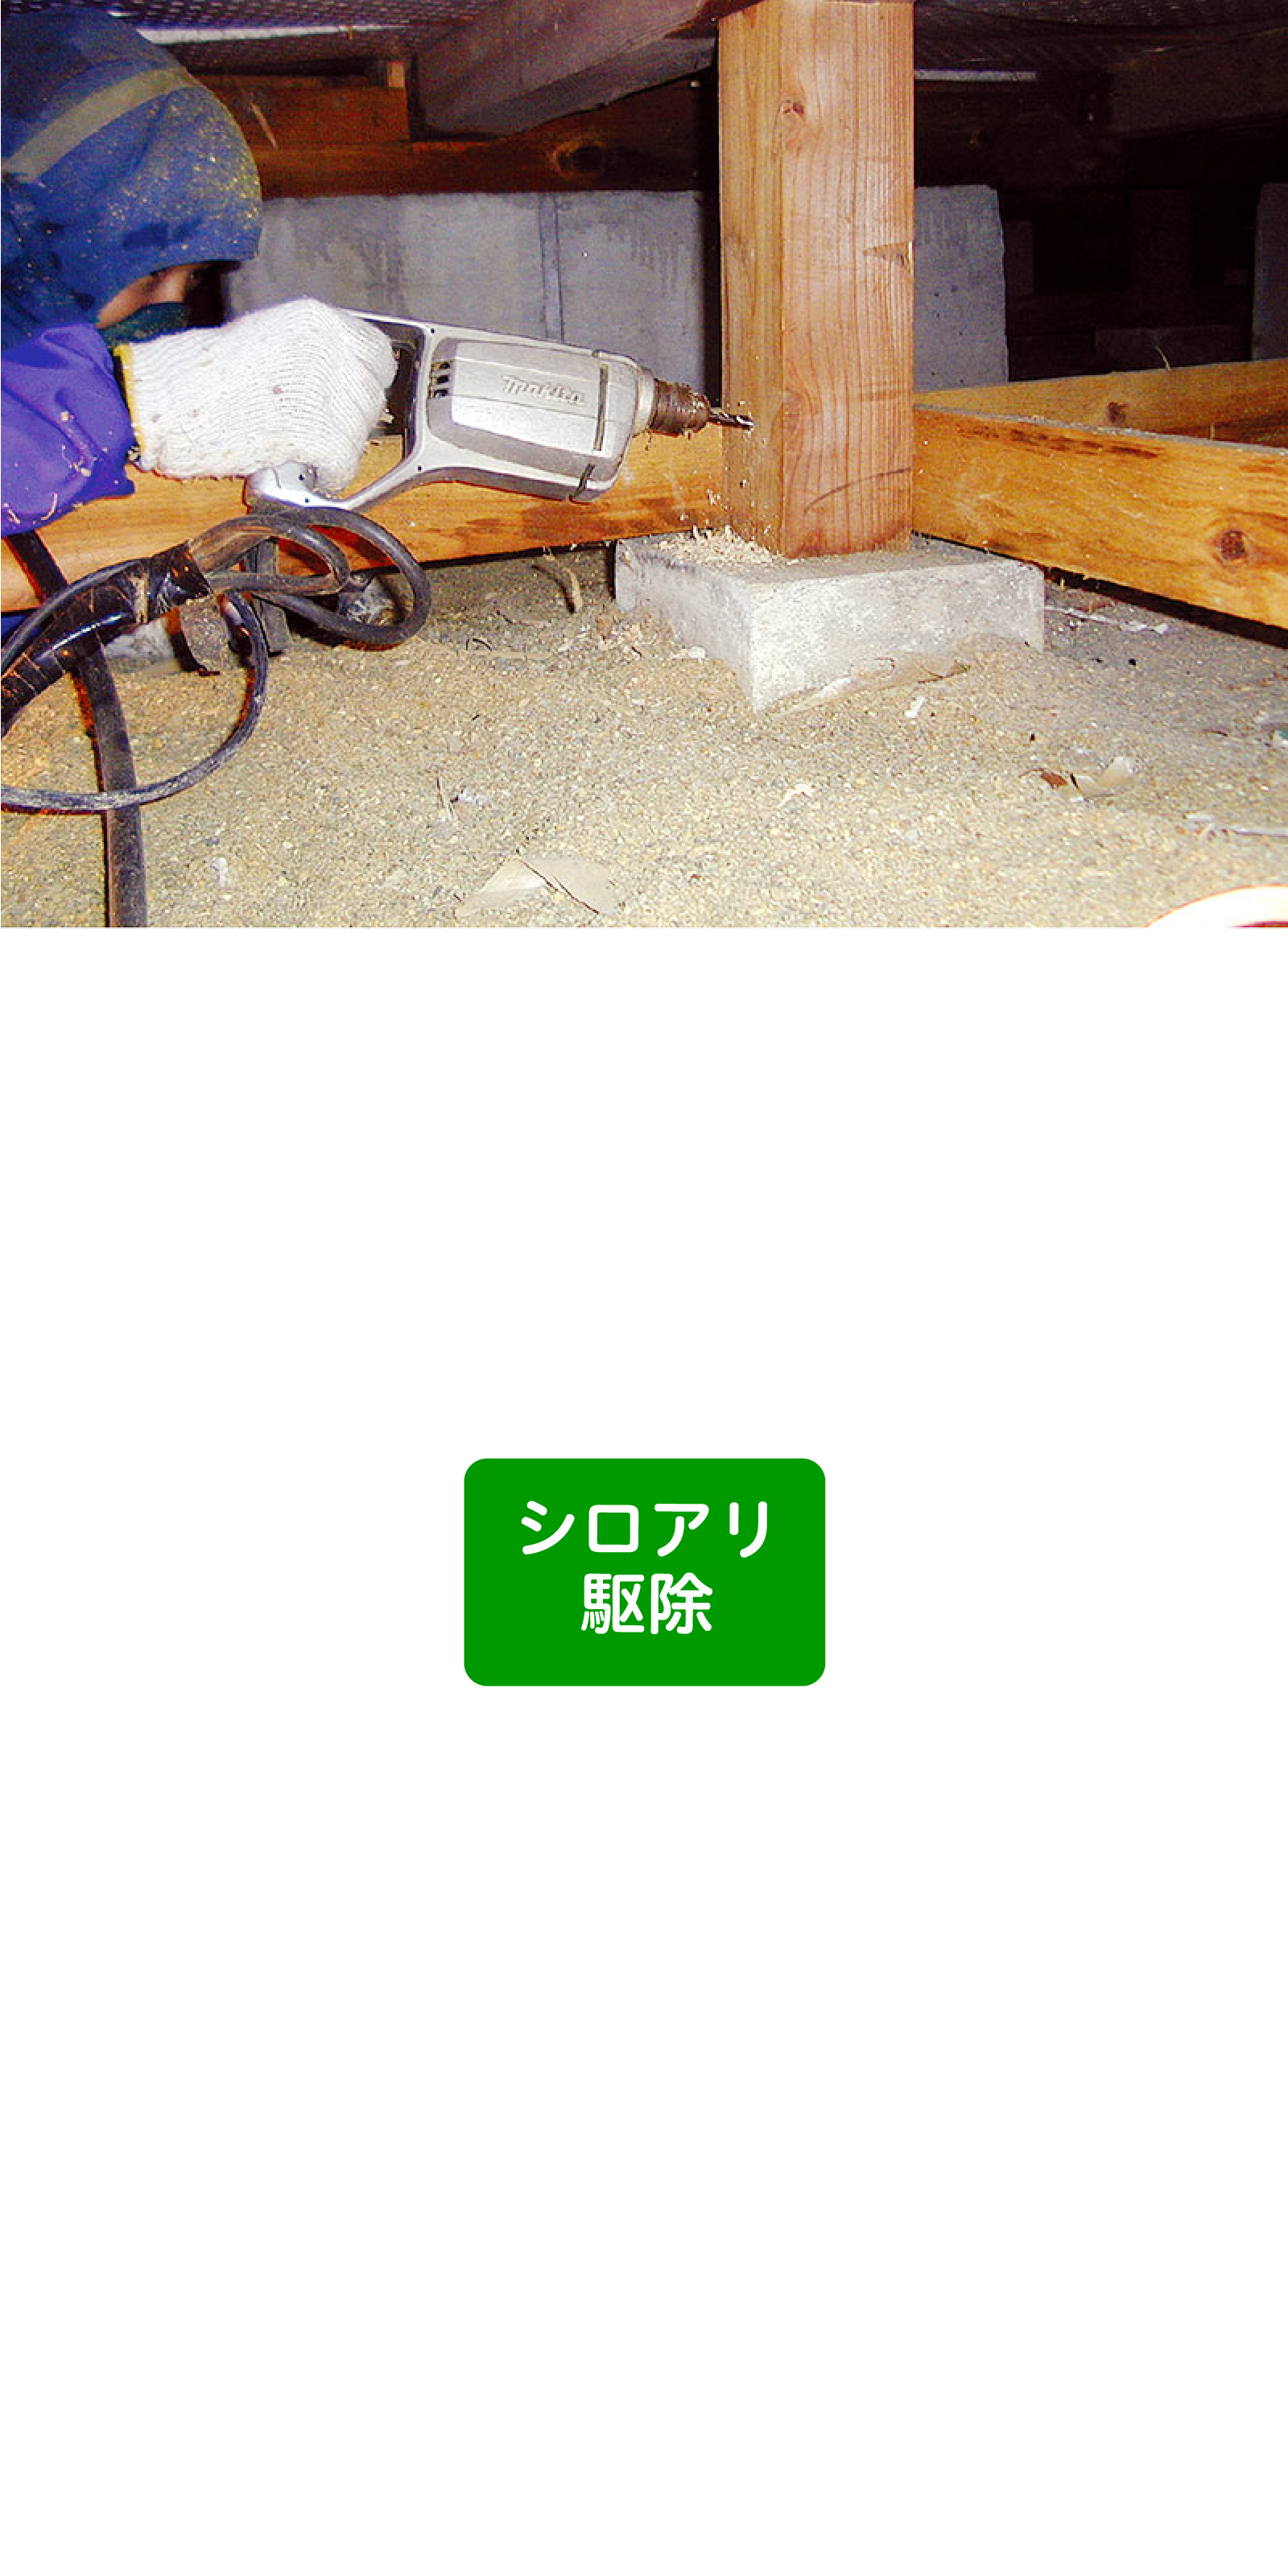 シロアリ撃退コース 79,800円(税込)